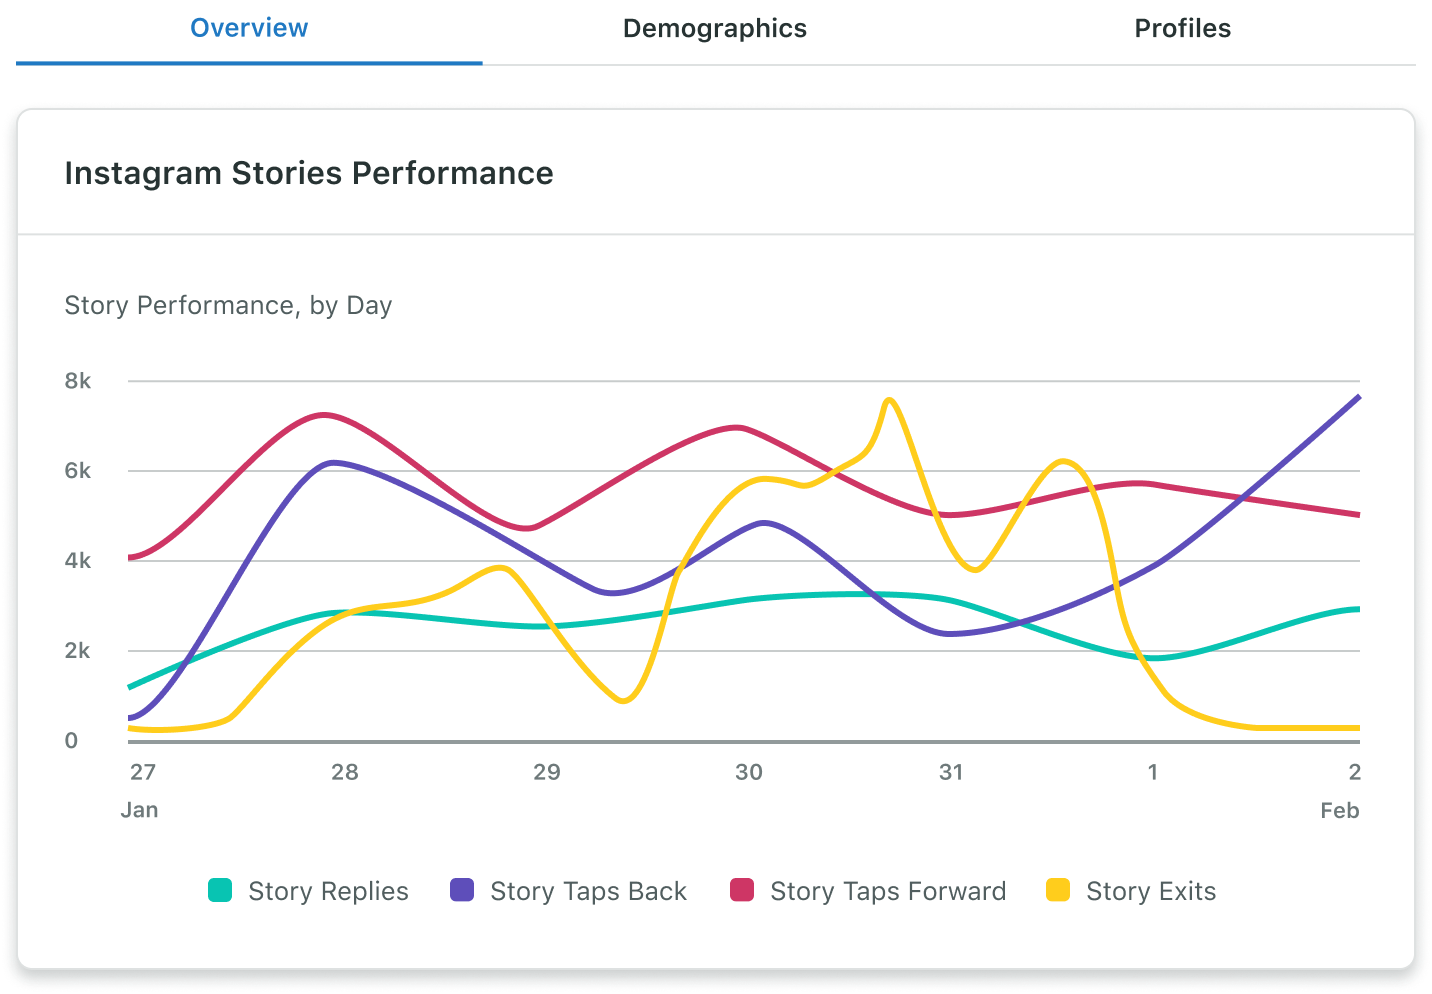 Il Report sui profili aziendali Instagram include dati sulle prestazioni giornaliere delle storie, come risposte, Tocca indietro, Tocca avanti e uscite, per un intervallo di date a tua scelta.